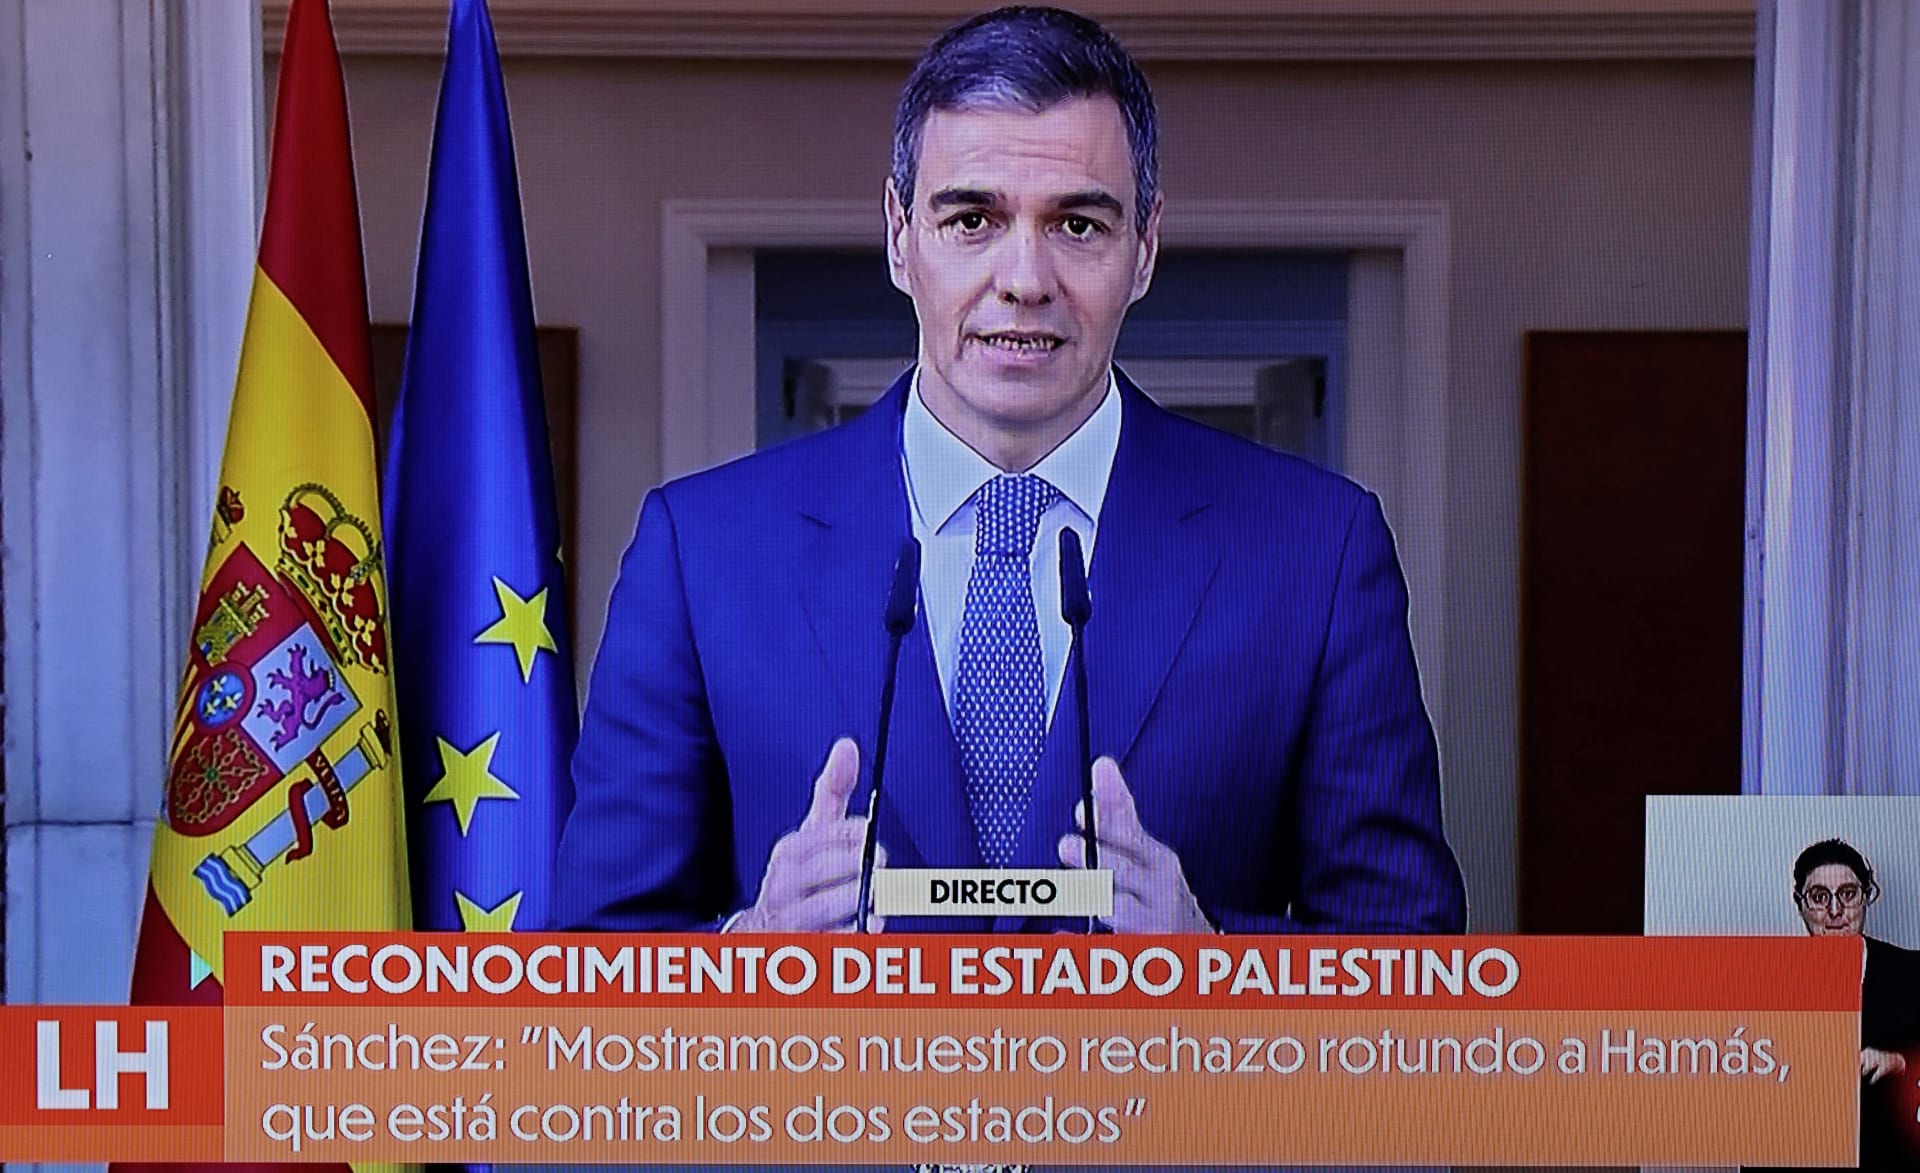 رئيس وزراء إسبانيا يُعلن موعد الاعتراف رسميا بدولة فلسطينية.. ويوضح: هذه خطوة ضد "حماس"